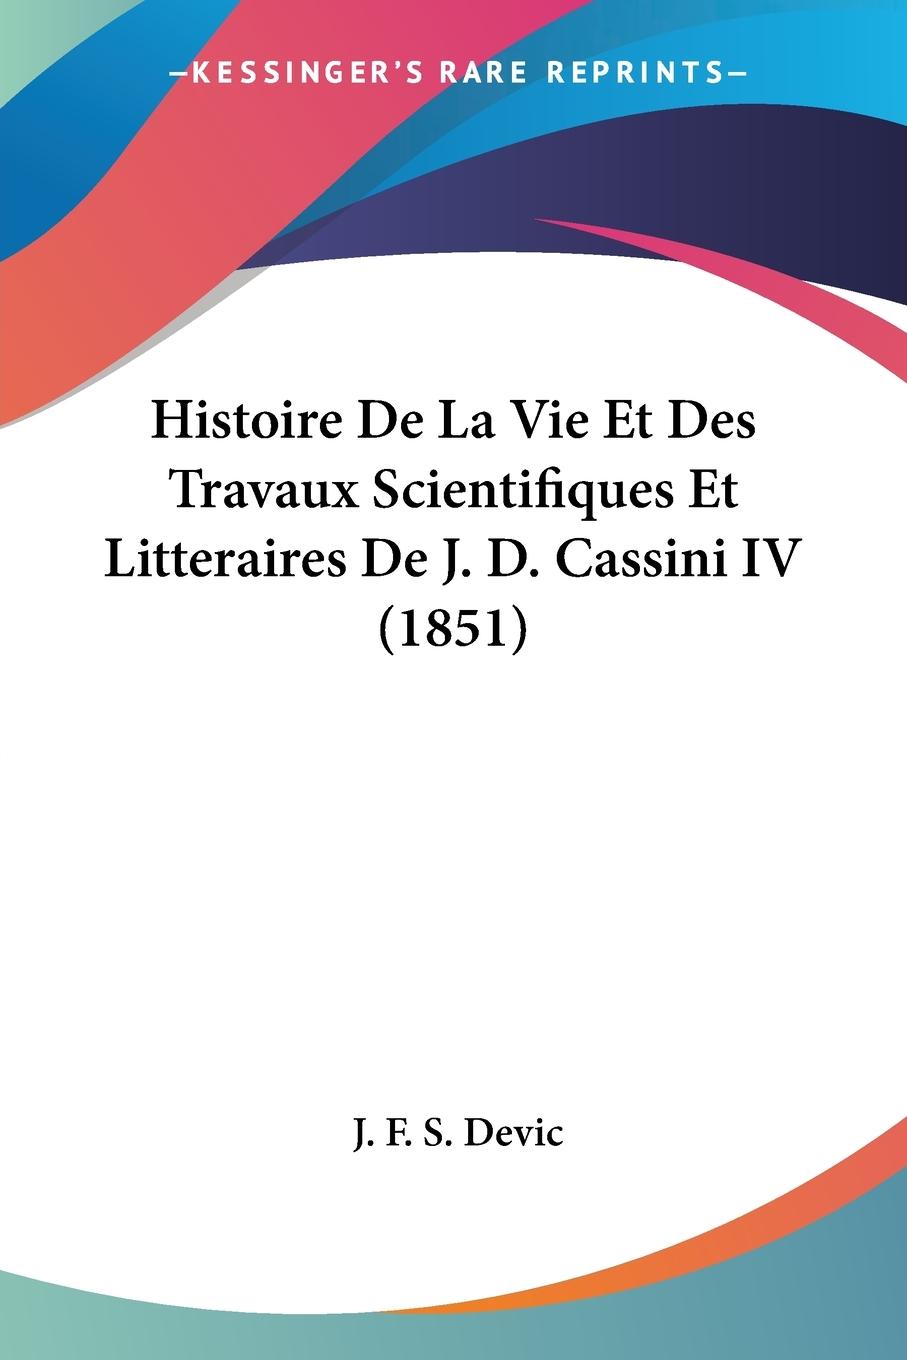 Histoire De La Vie Et Des Travaux Scientifiques Et Litteraires De J. D. Cassini IV (1851) - Devic, J. F. S.